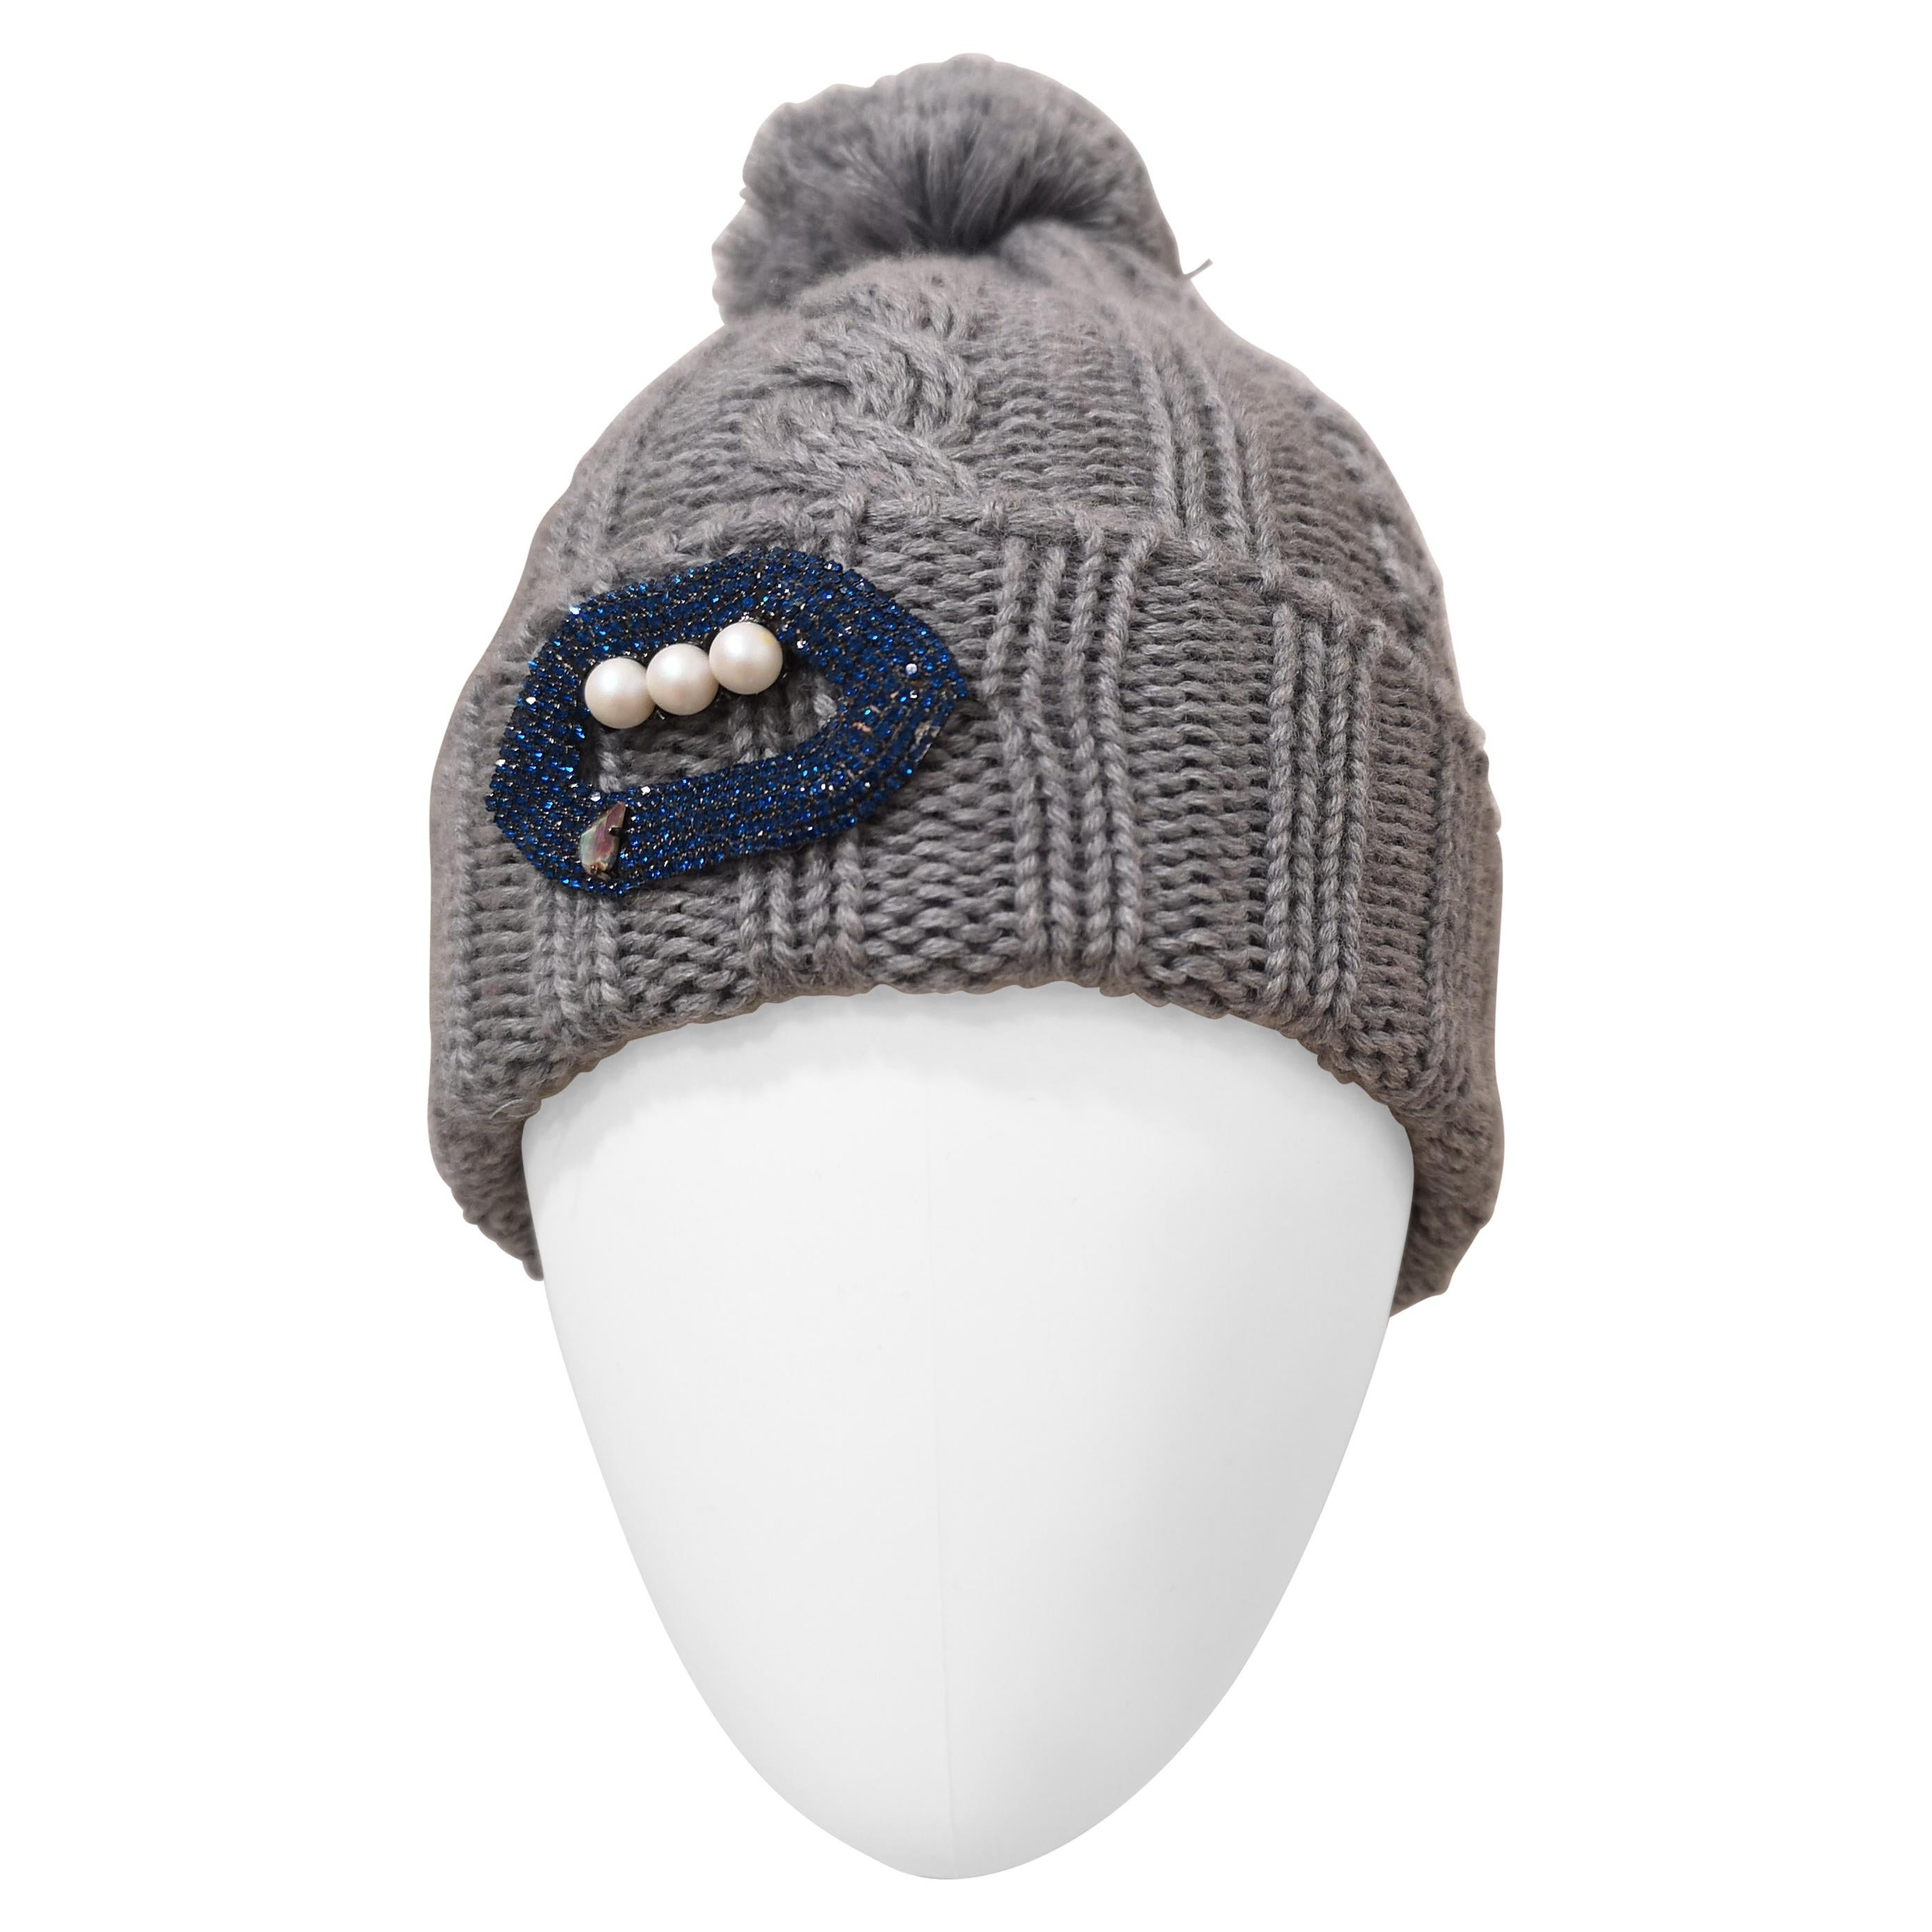 Grey wool mouth teeth swarovski brooch hat